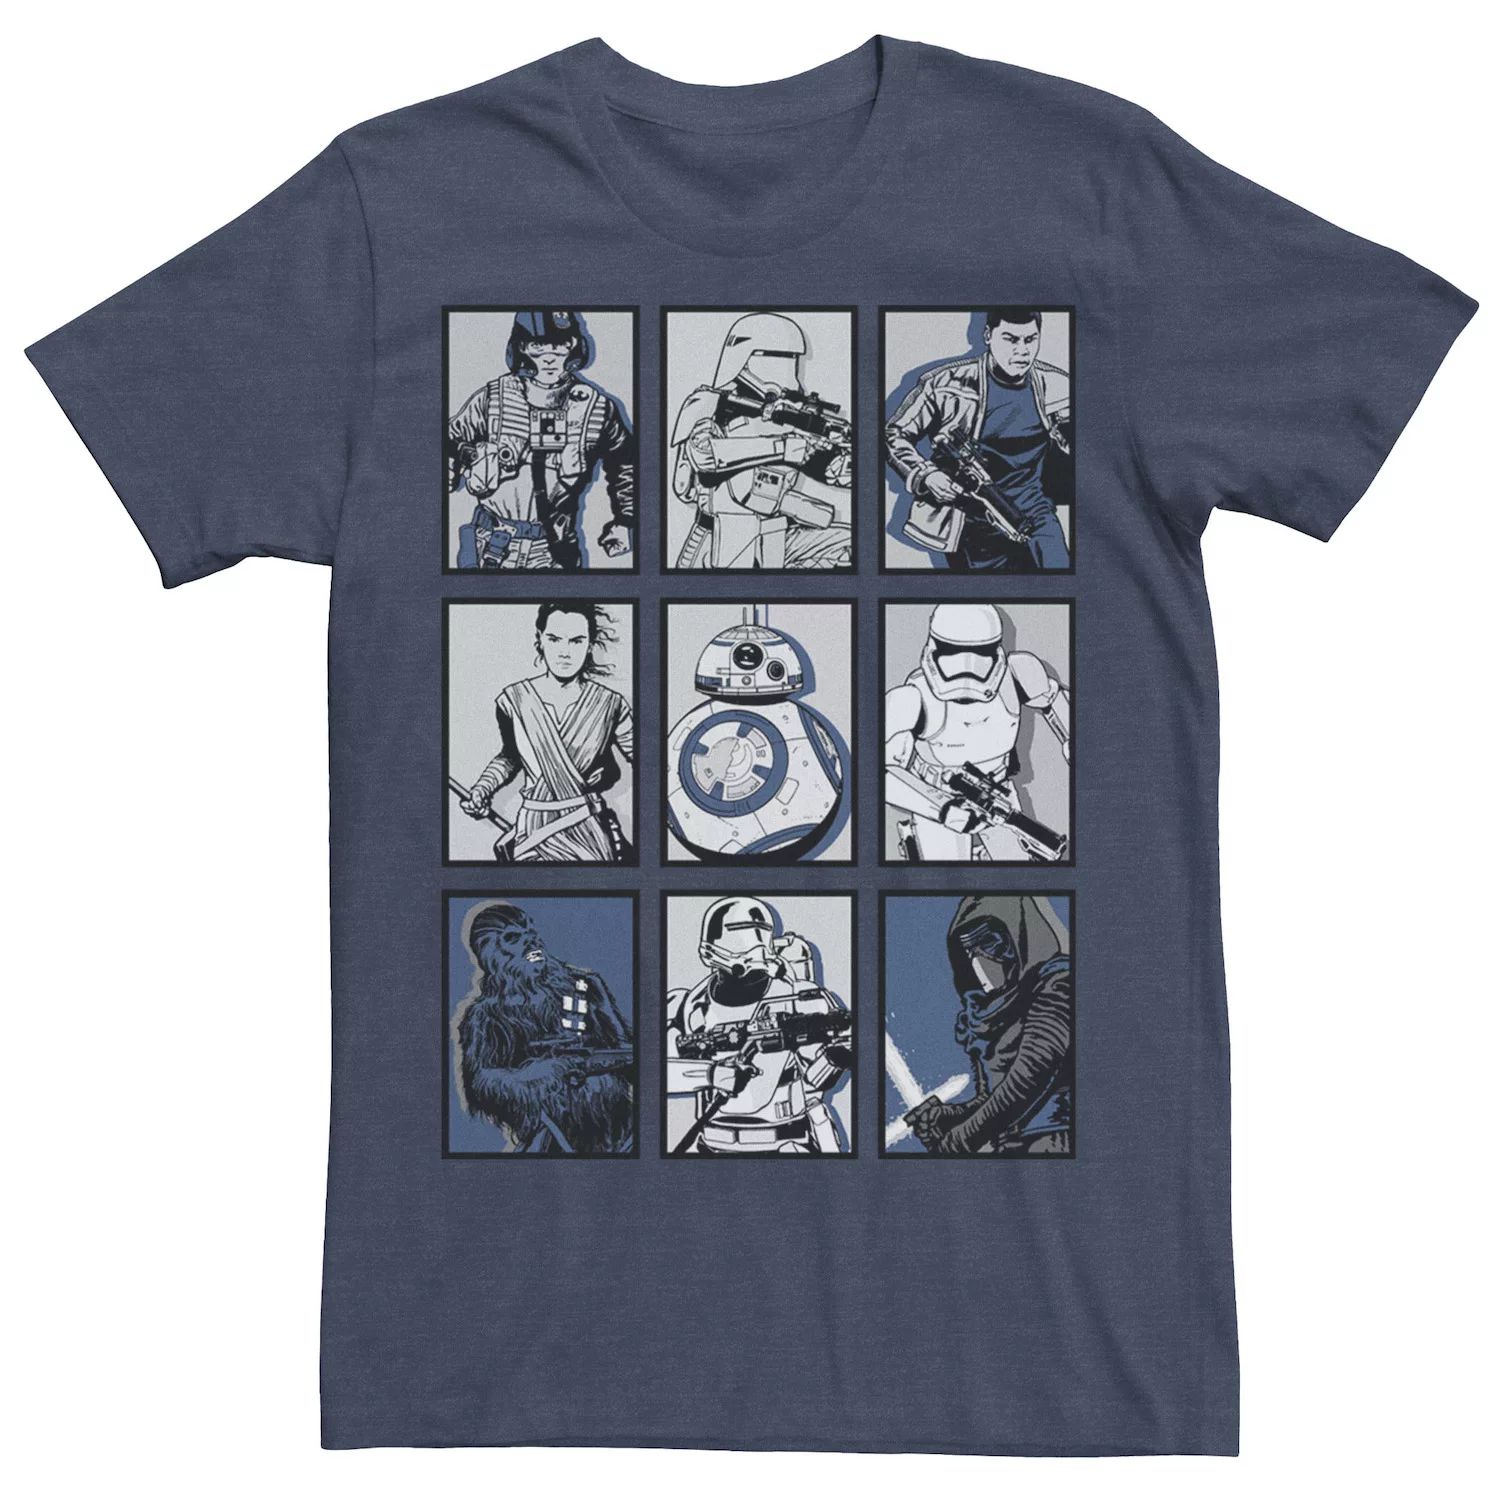 Мужская футболка с графическим плакатом и плакатом «Пробуждение Силы» Star Wars